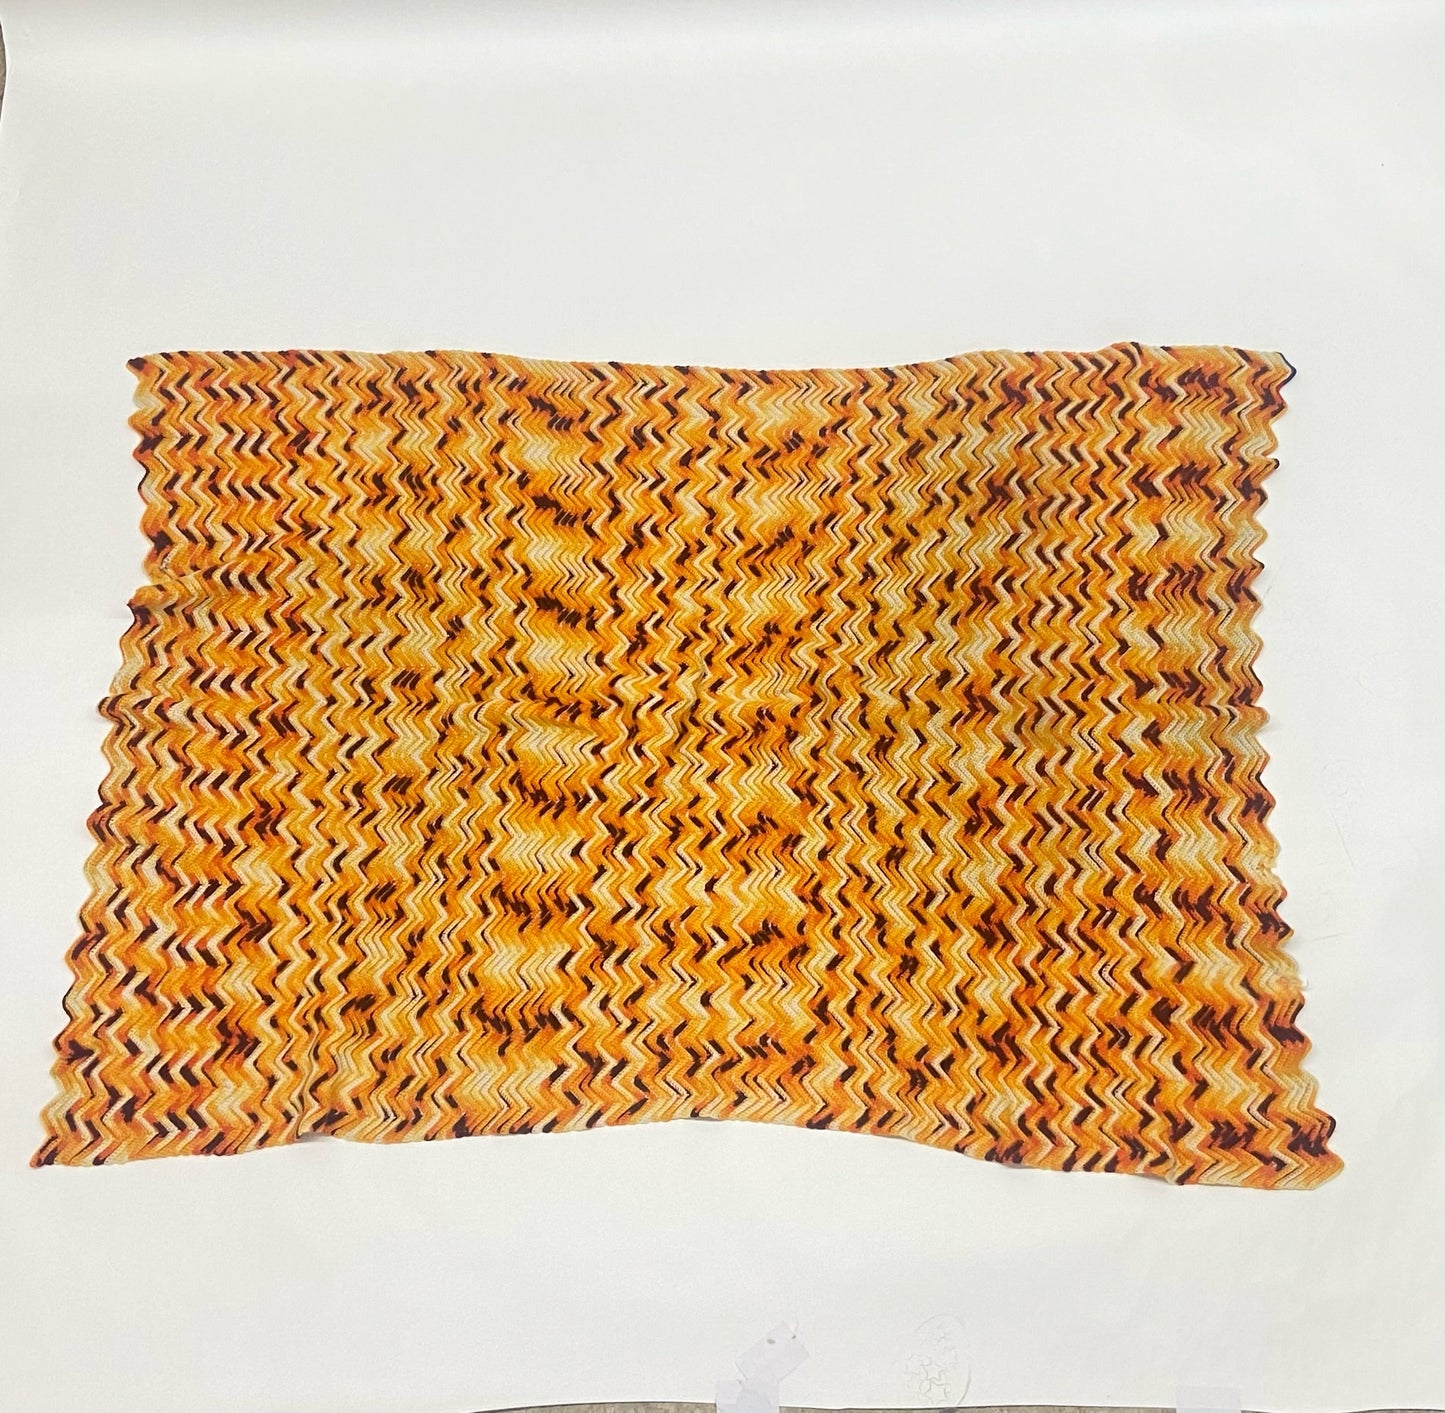 Preloved Hand made Crochet Heirloom Blanket Blankets Goodfair 